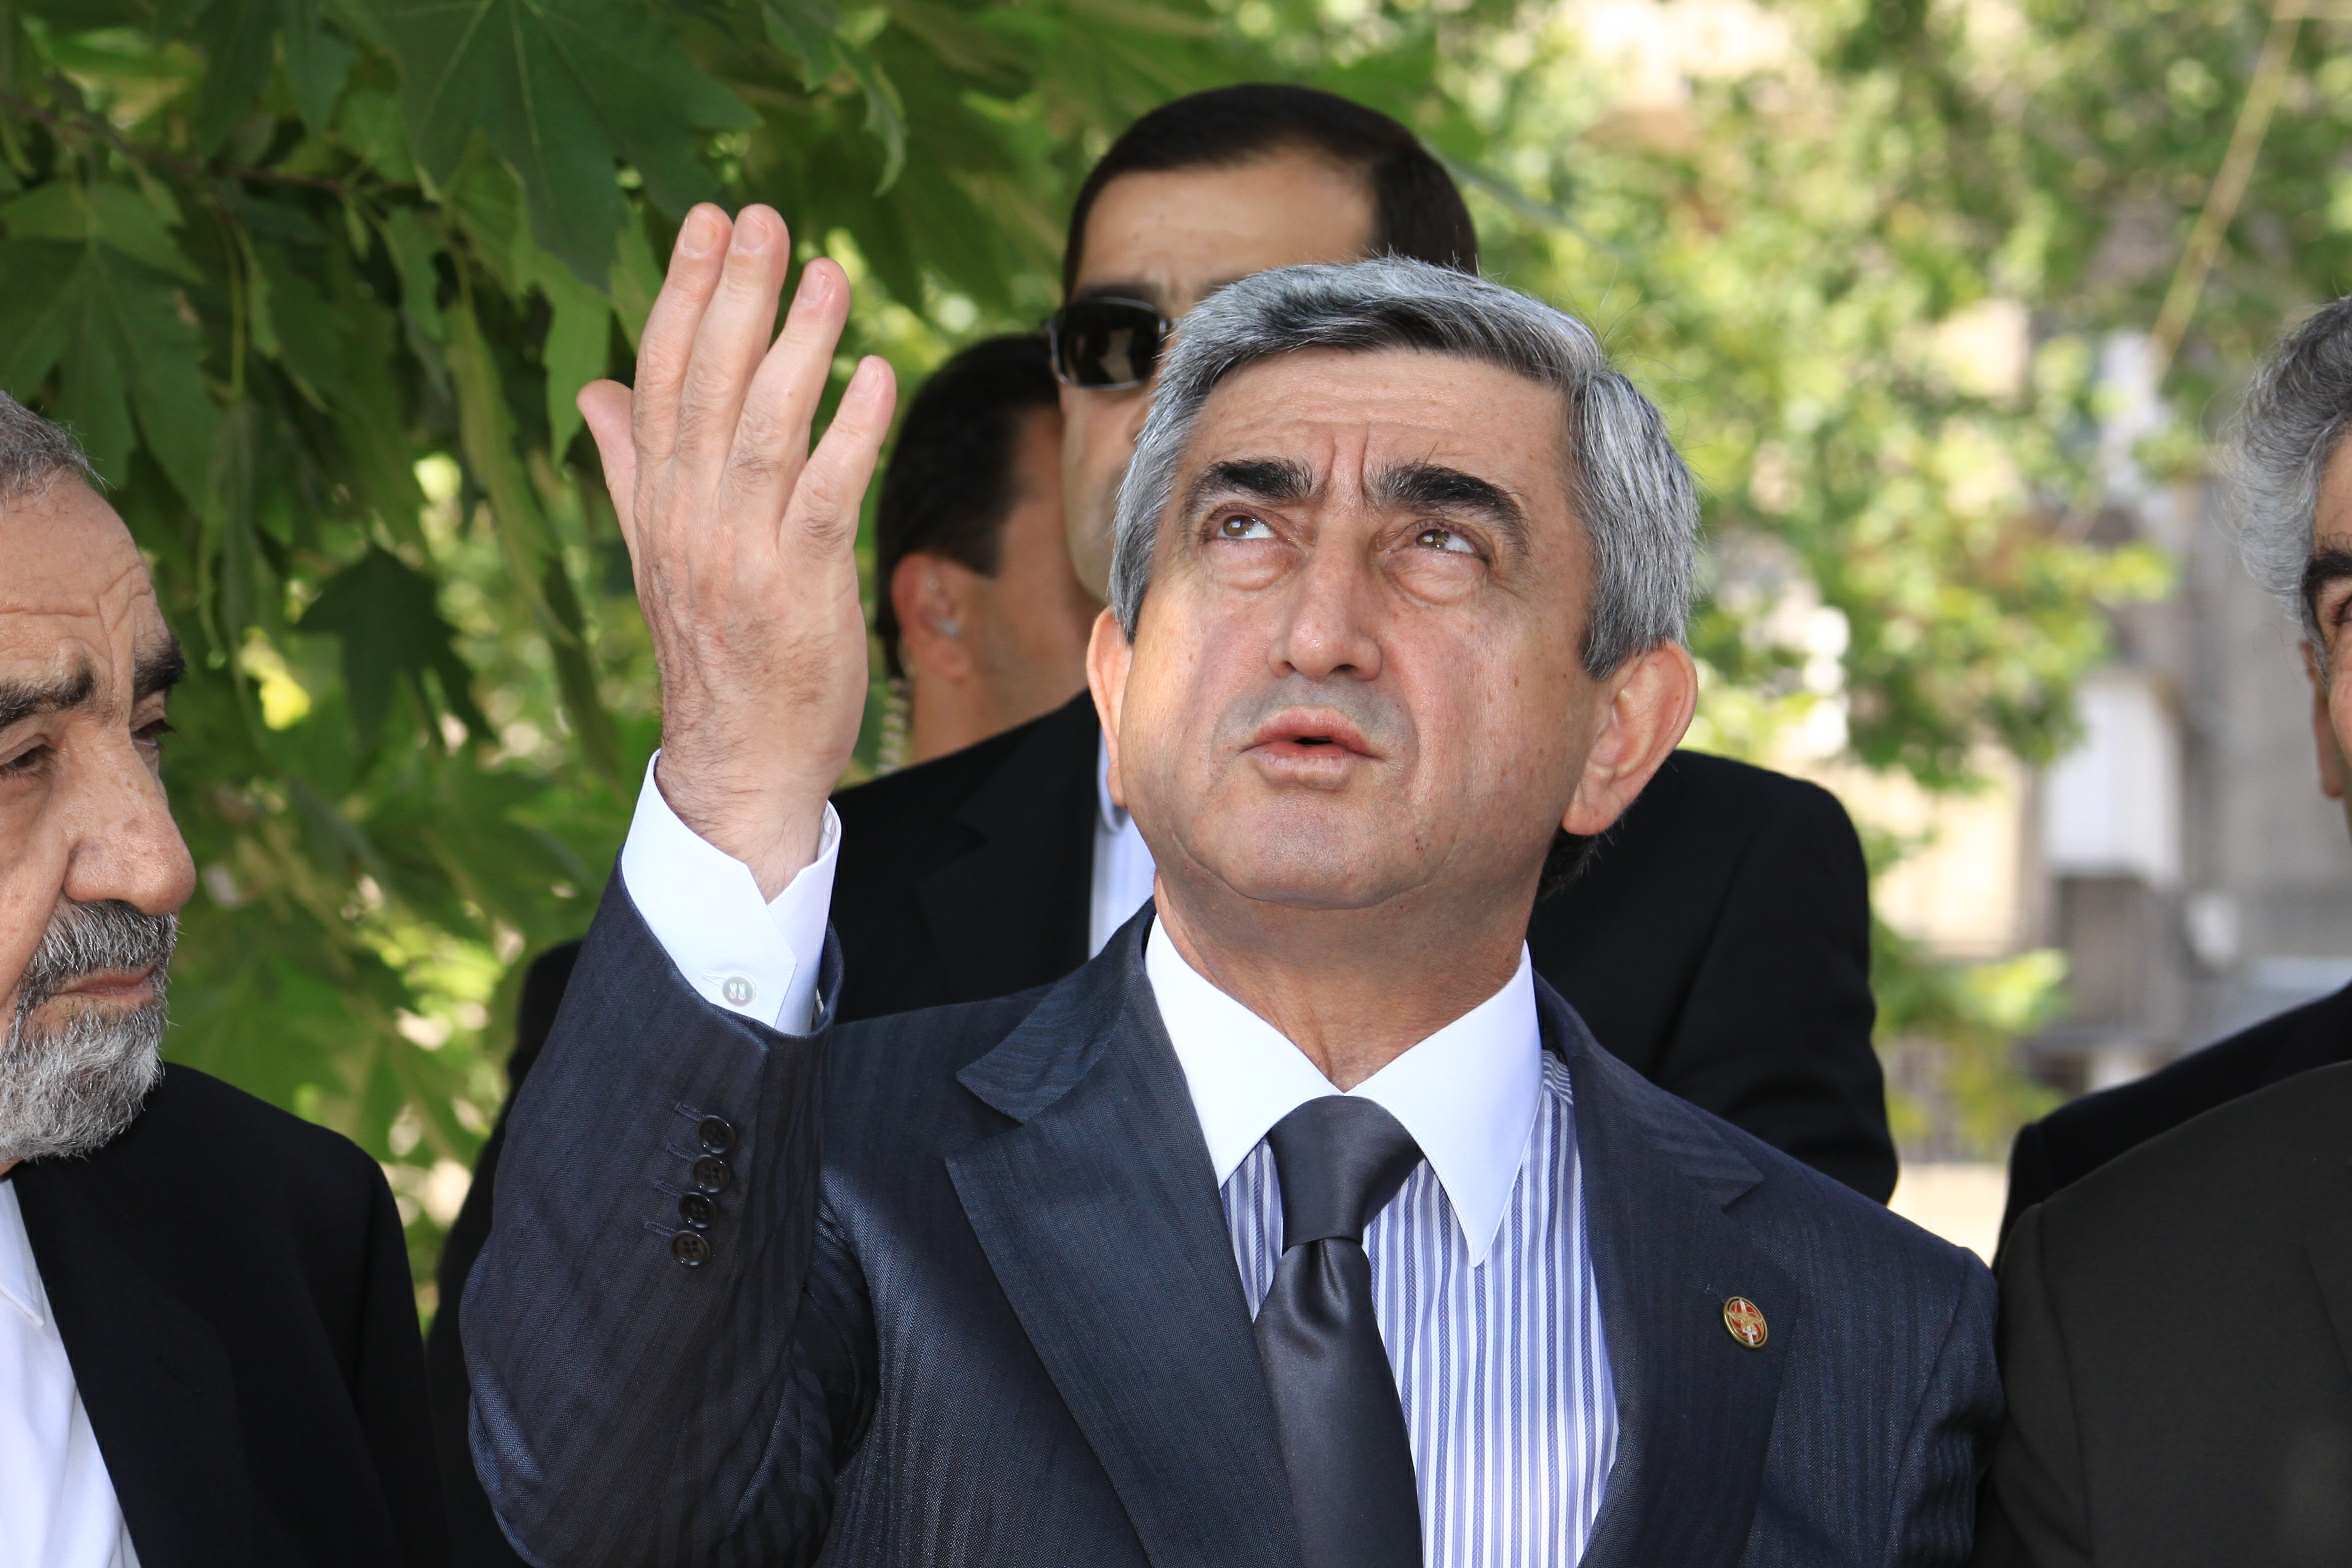 Մամուլ. ինչո՞վ է զբաղվելու Սերժ Սարգսյանը ապրիլի 9-ից 17-ը ճակատագրական ժամանակահատվածում